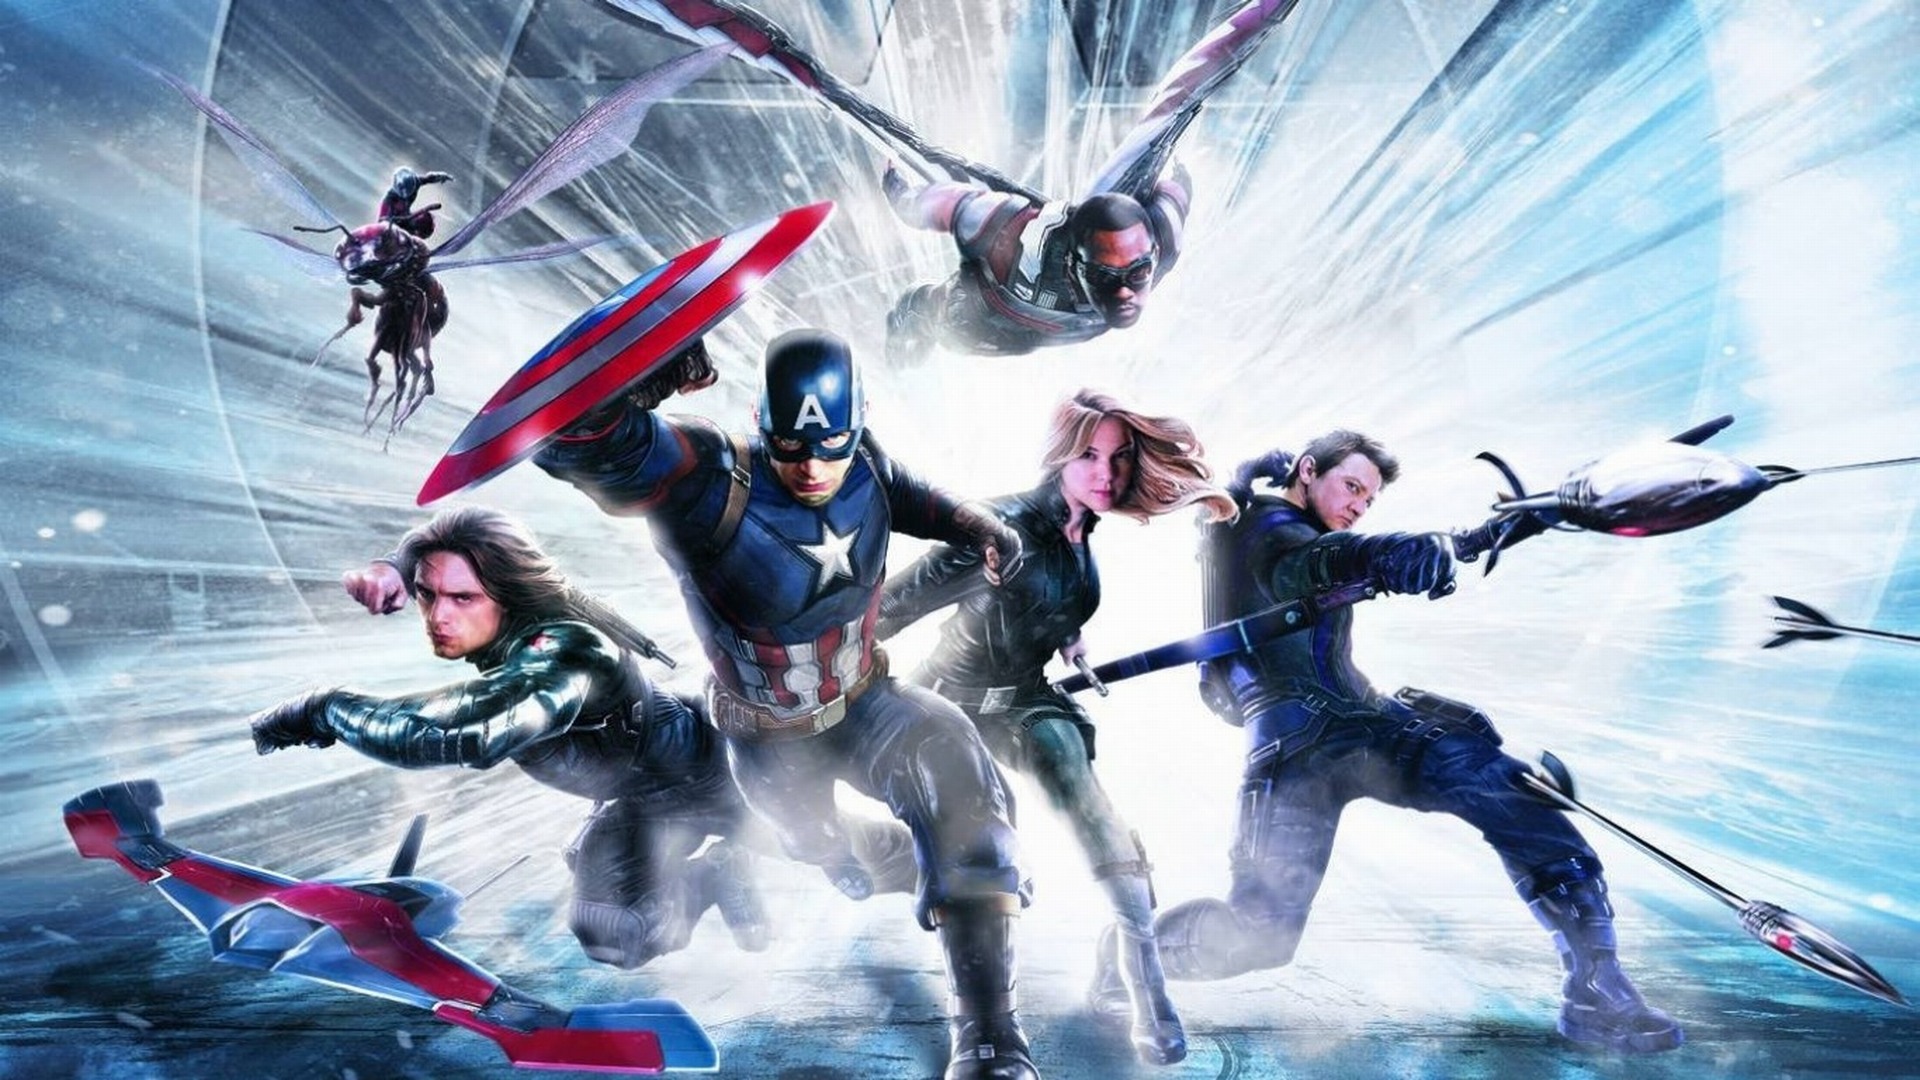 civil war hd wallpaper,fictional character,hero,superhero,cg artwork,action adventure game